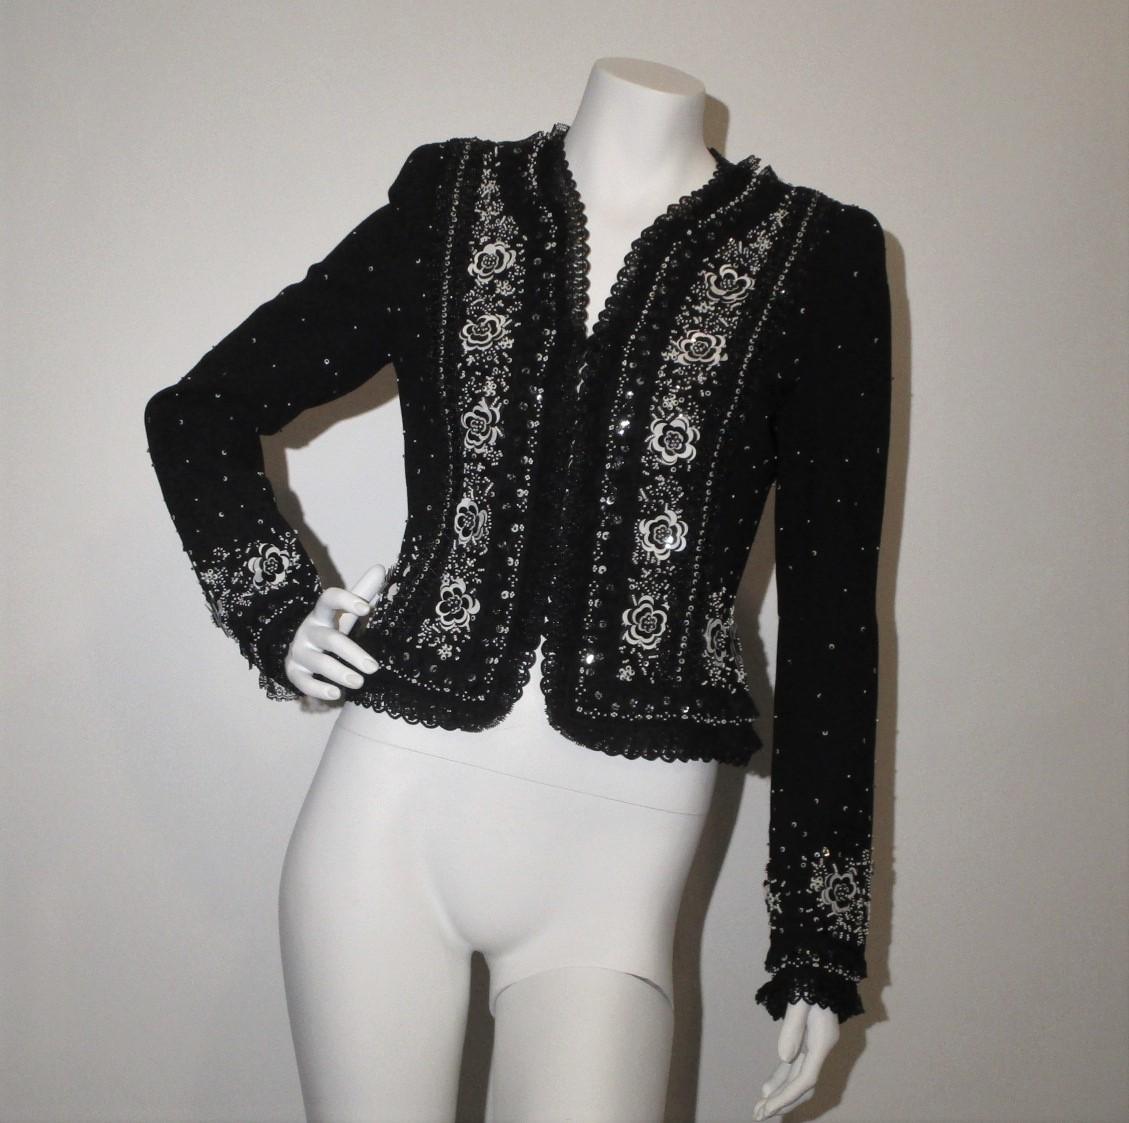 Atemberaubende ESCADA Couture Schwarze Jacke mit wunderschönen Perlen, Pailletten und Spitze.

Abmessungen:
Größe 36
20